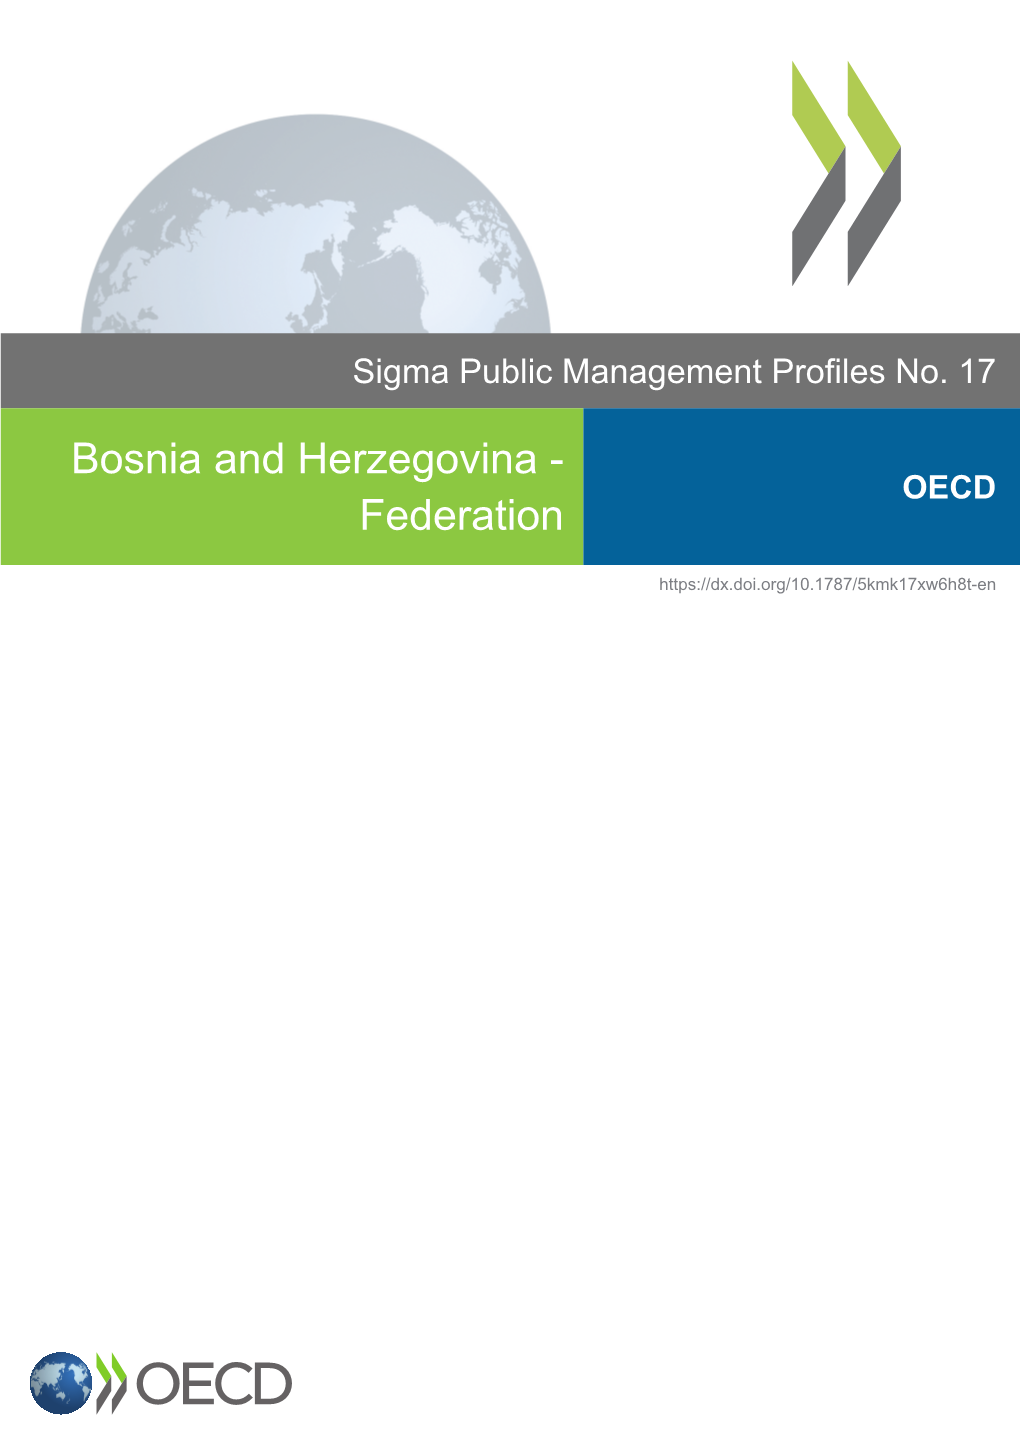 Bosnia and Herzegovina - OECD Federation